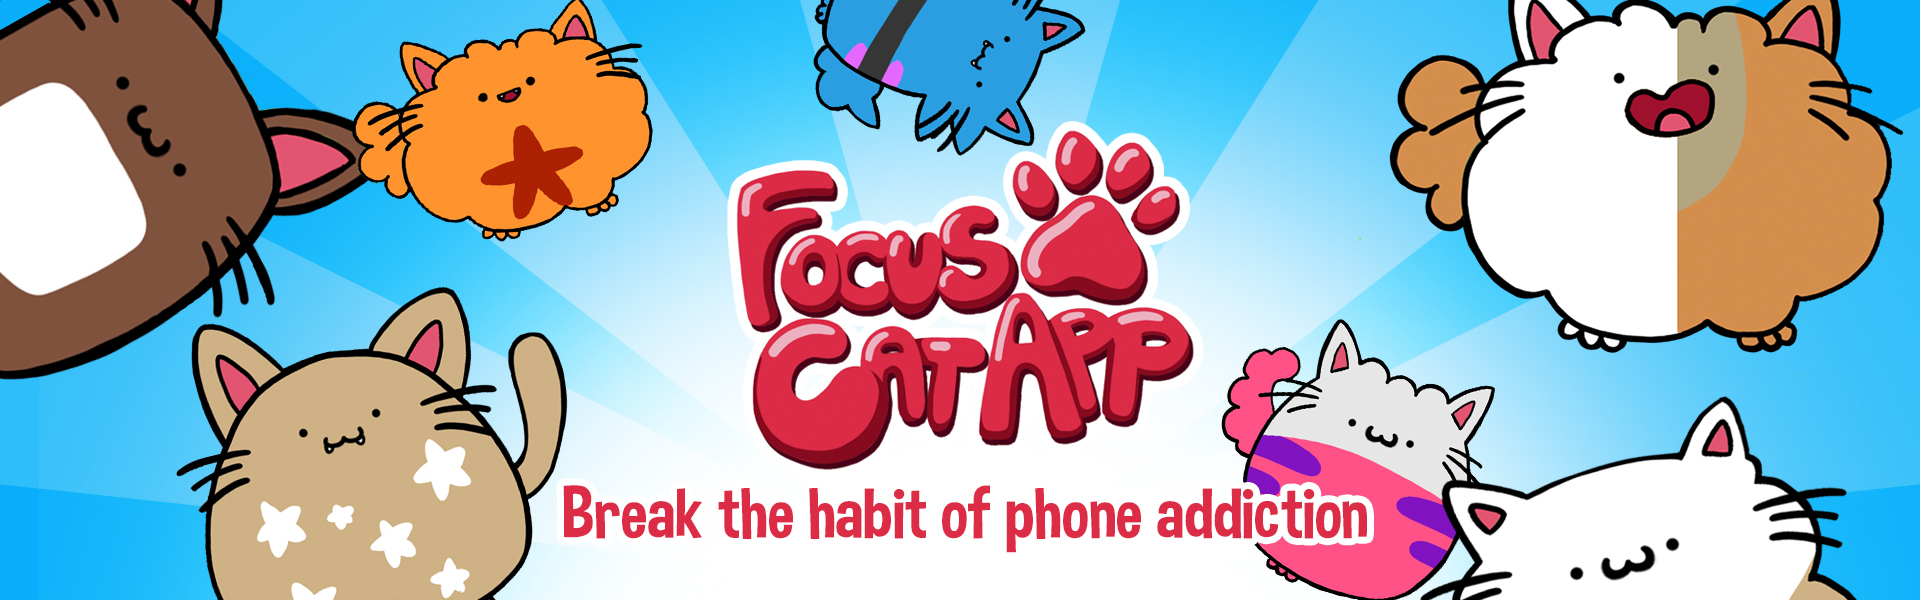 focus cat app to focus